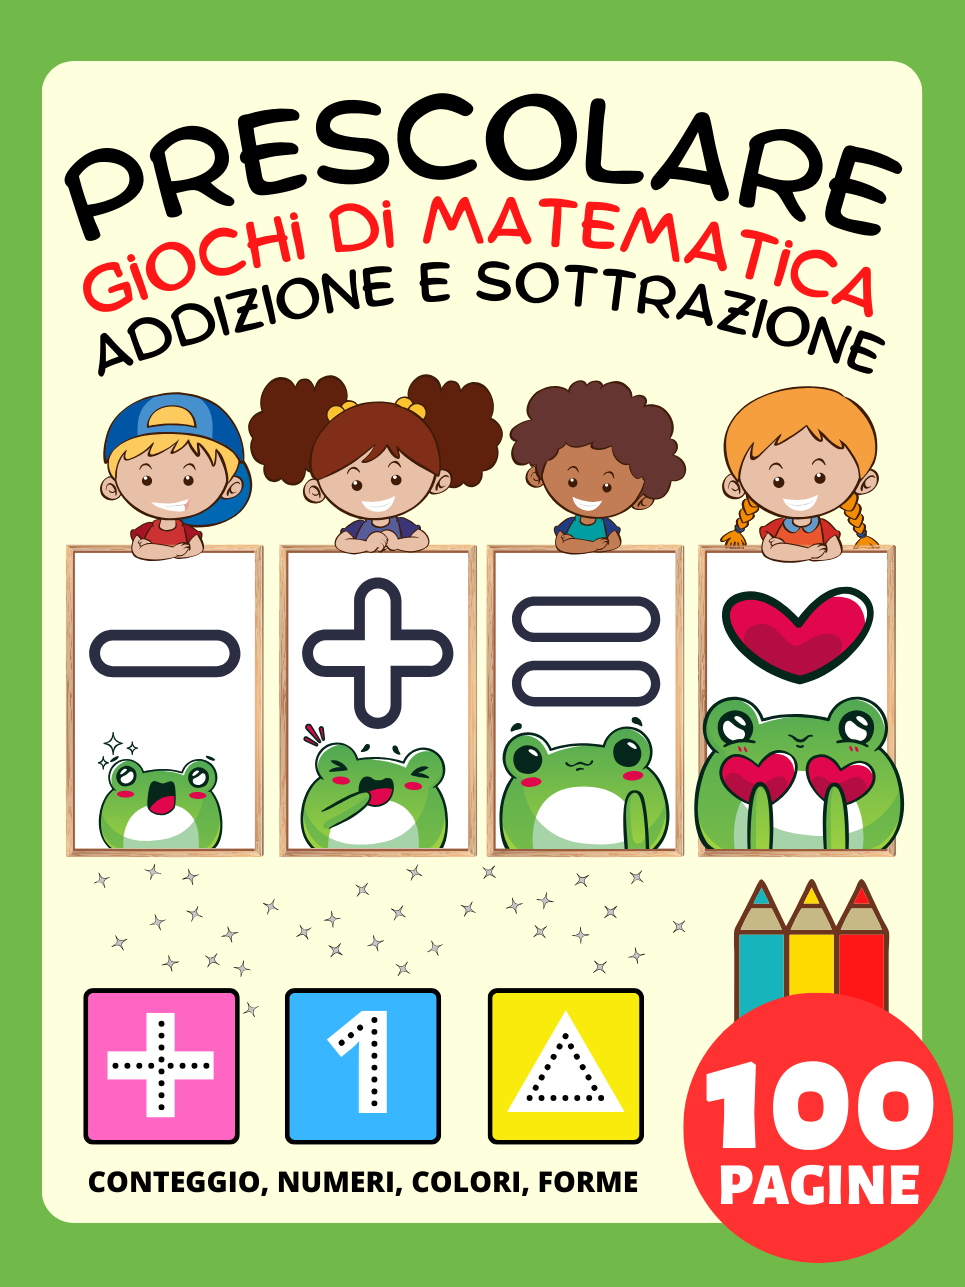 Libro Prescolare: Libro di Attività Giochi di Matematica per Bambini da 2 Anno, Addizione e Sottrazione, Più e Meno